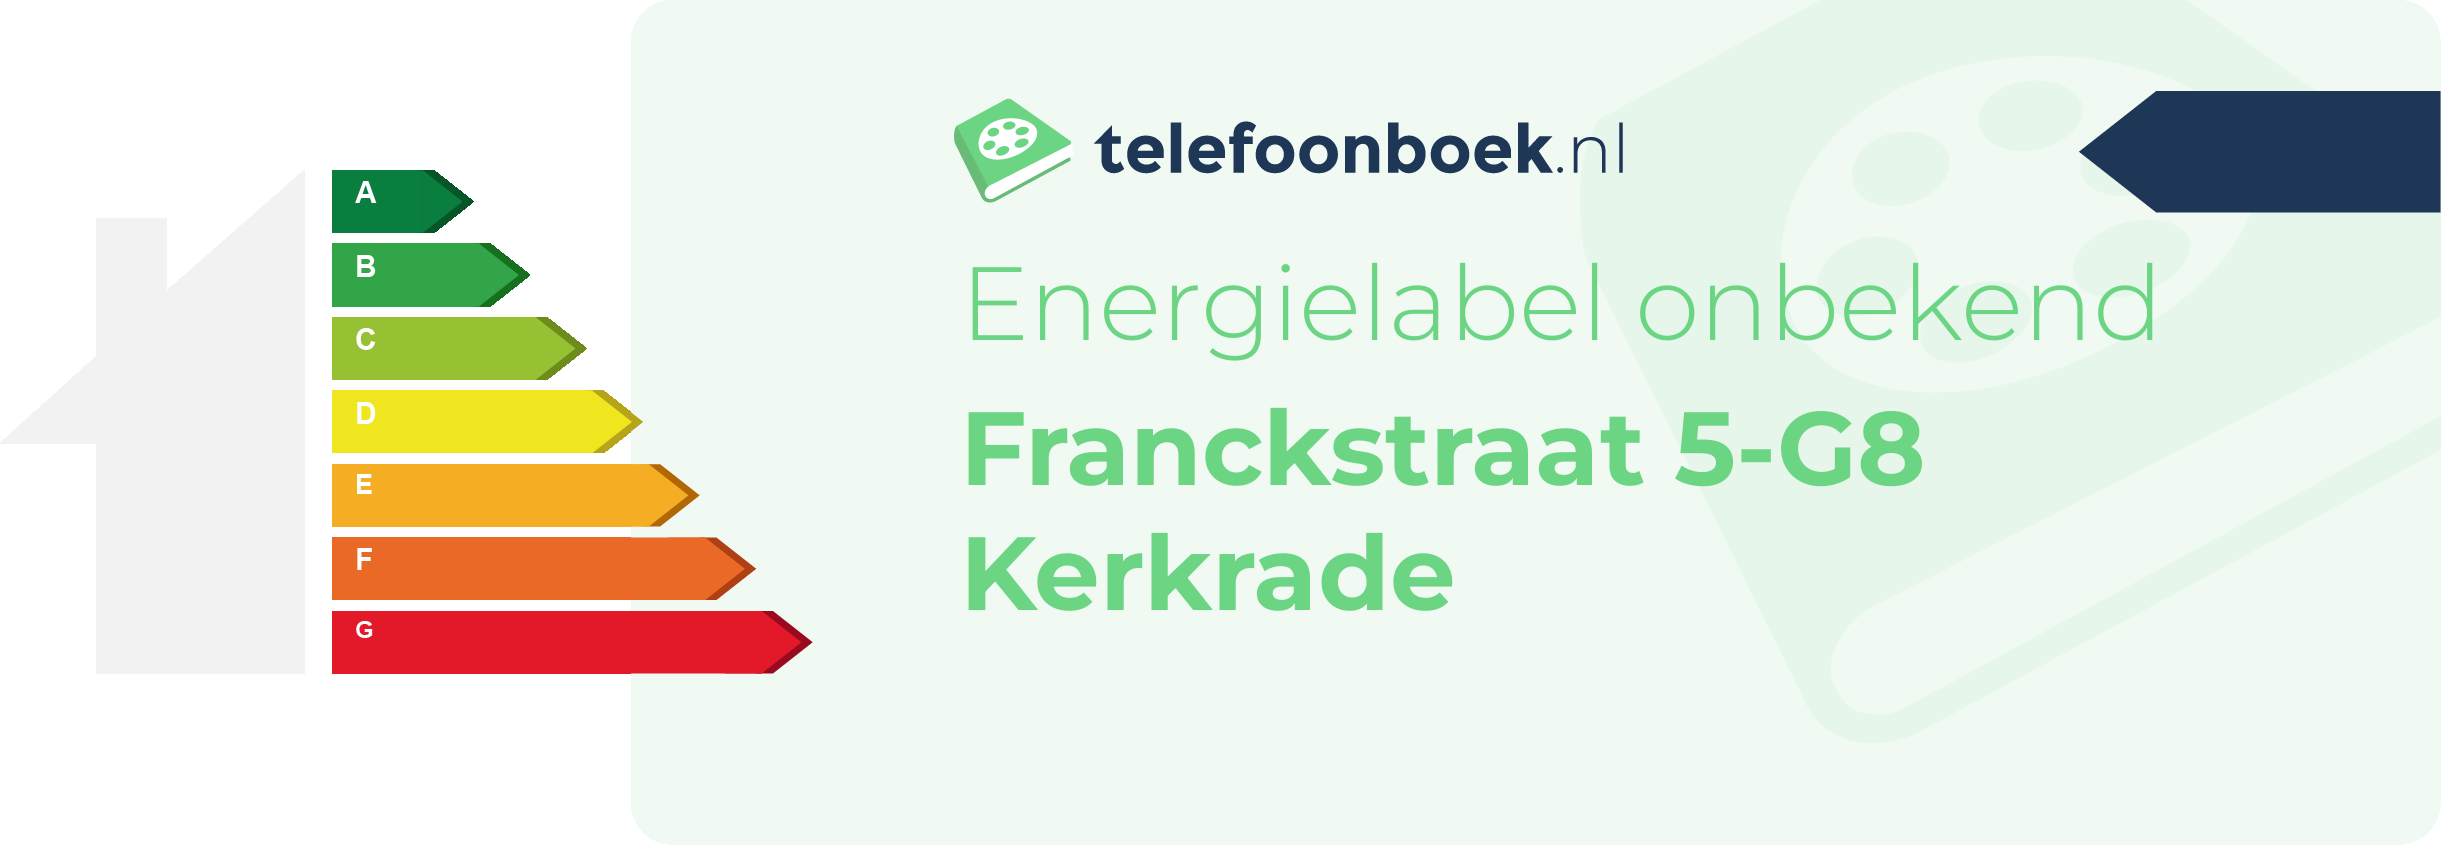 Energielabel Franckstraat 5-G8 Kerkrade